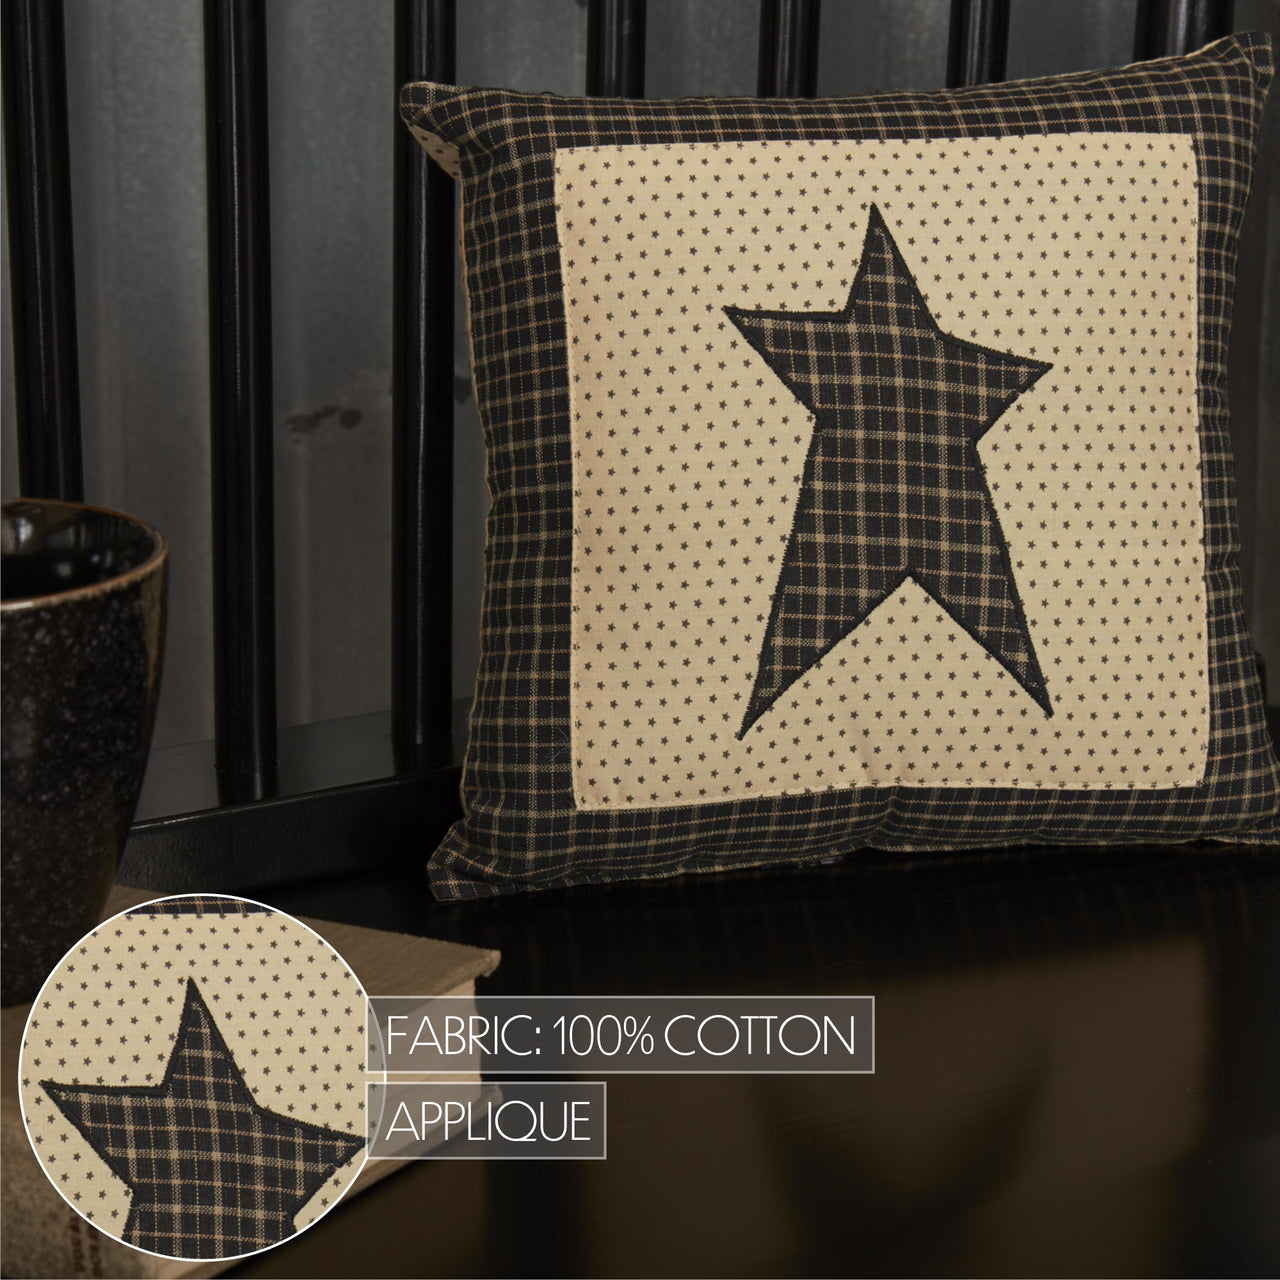 Kettle Grove Pillow Star 10x10